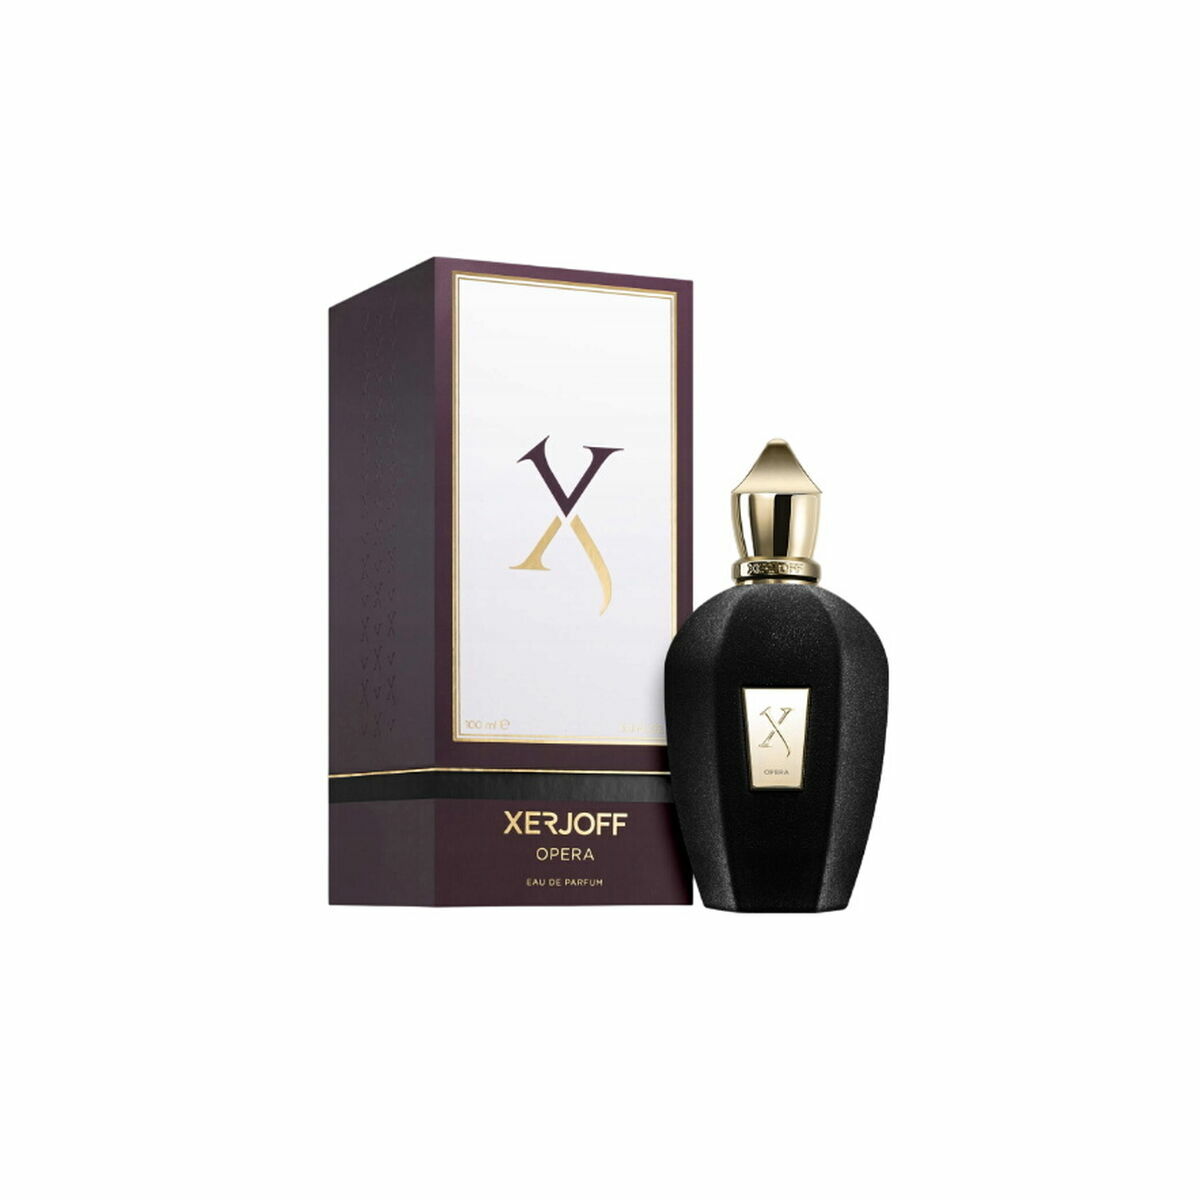 Osta tuote Unisex parfyymi Xerjoff Opera EDP 100 ml verkkokaupastamme Korhone: Parfyymit & Kosmetiikka 10% alennuksella koodilla KORHONE